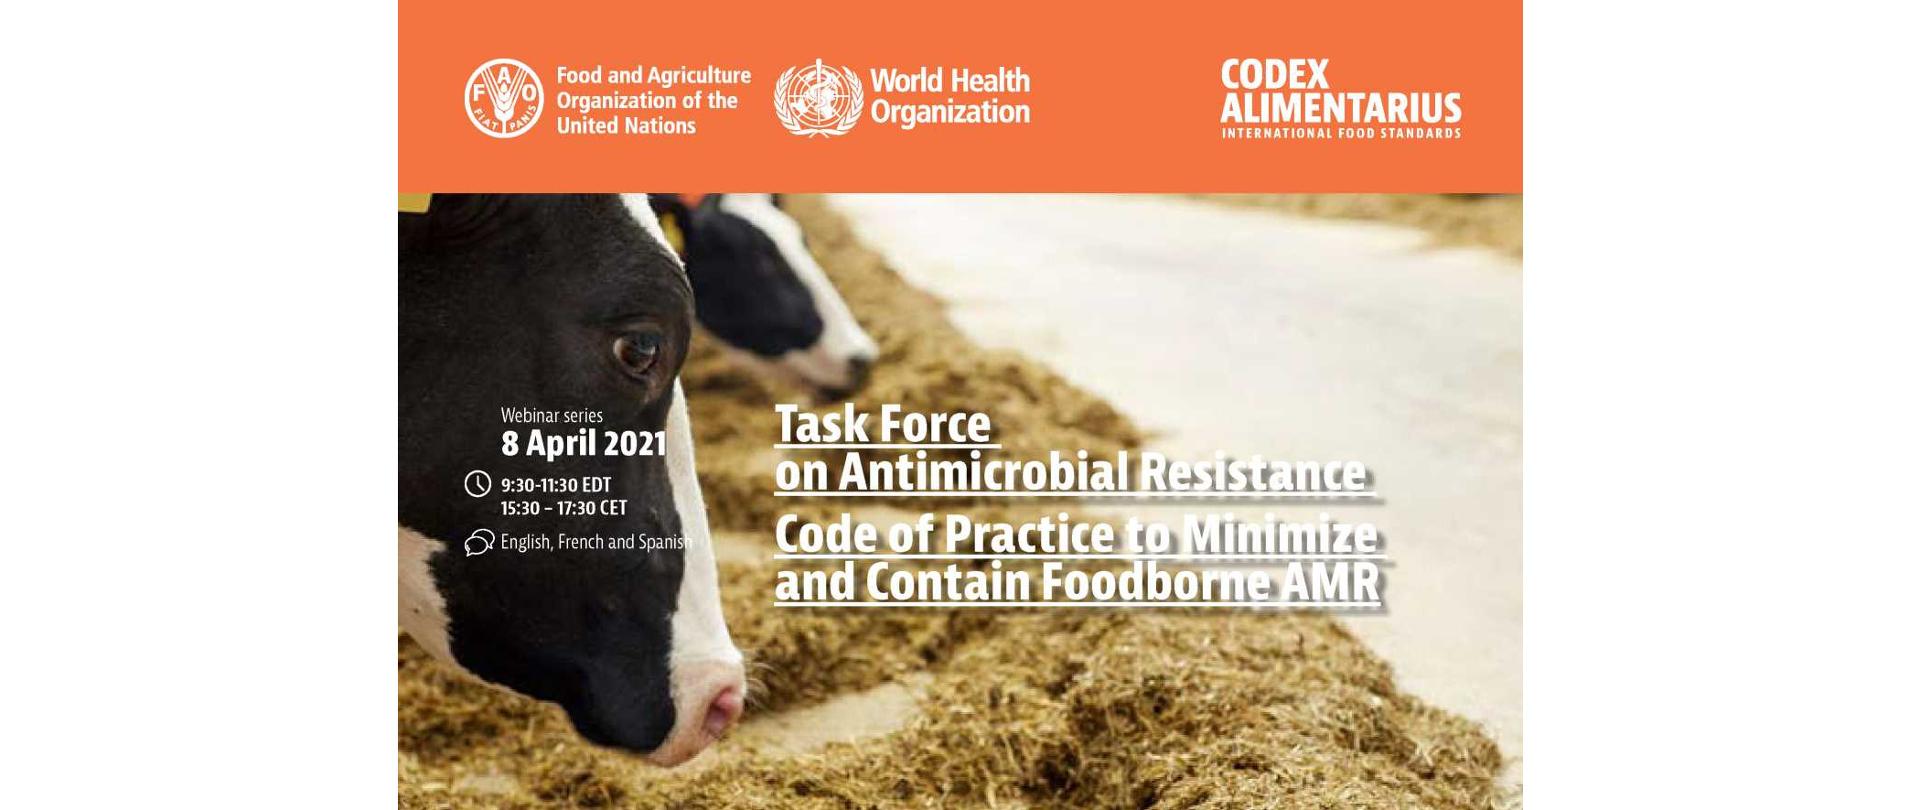 Na zdjęciu w tle są dwie głowy krów, które jedzą siano.
Informacje w języku angielskim: Webinar 8 April 2021, 9:30-11:30 EDT, 15:30-17:30 CET, English, French and Spanish. Task Force on Antimicrobial Resistance, Code of Practice to Minimize and Contain Foodborne AMR.
Na górze zdjęcia na paski znajdują się logotypy: FAO, WHO, Codex Alimentarius.